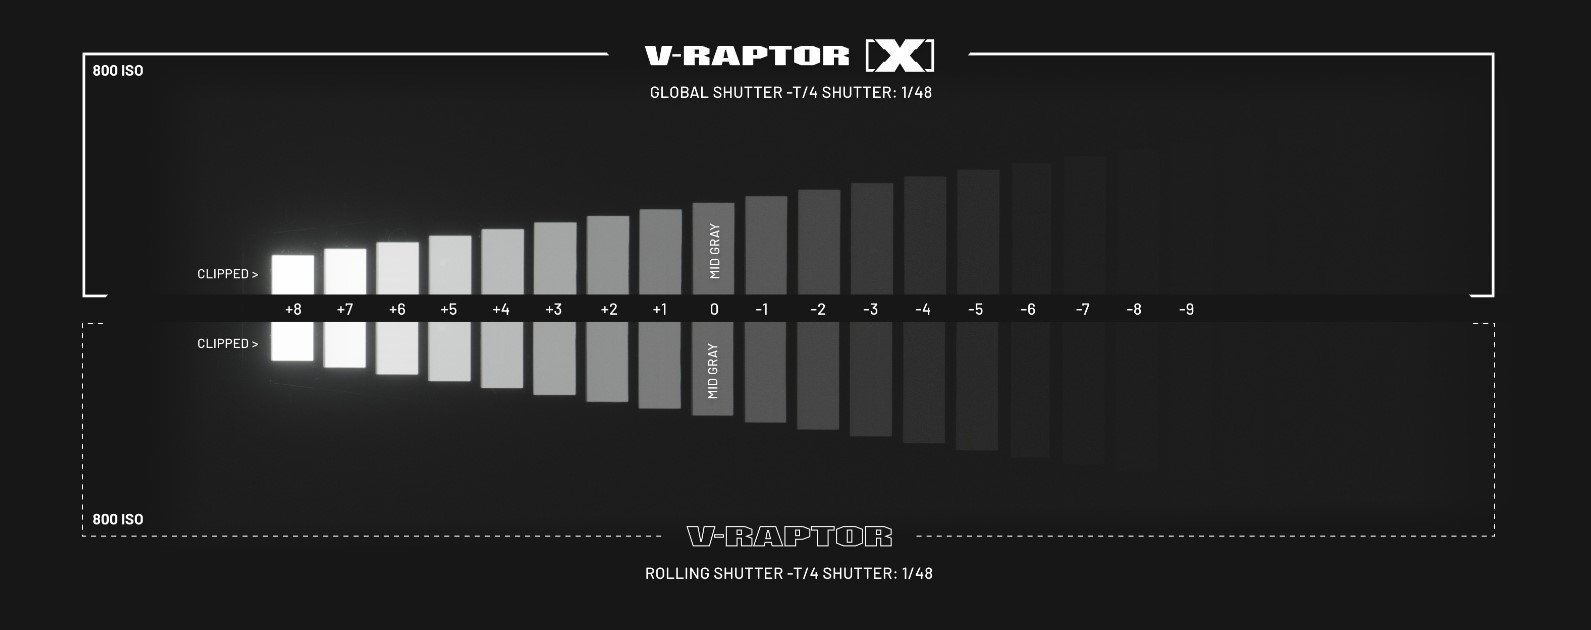 CZERWONY V-RAPTOR [X] i V-RAPTOR XL [X] - zakres dynamiczny